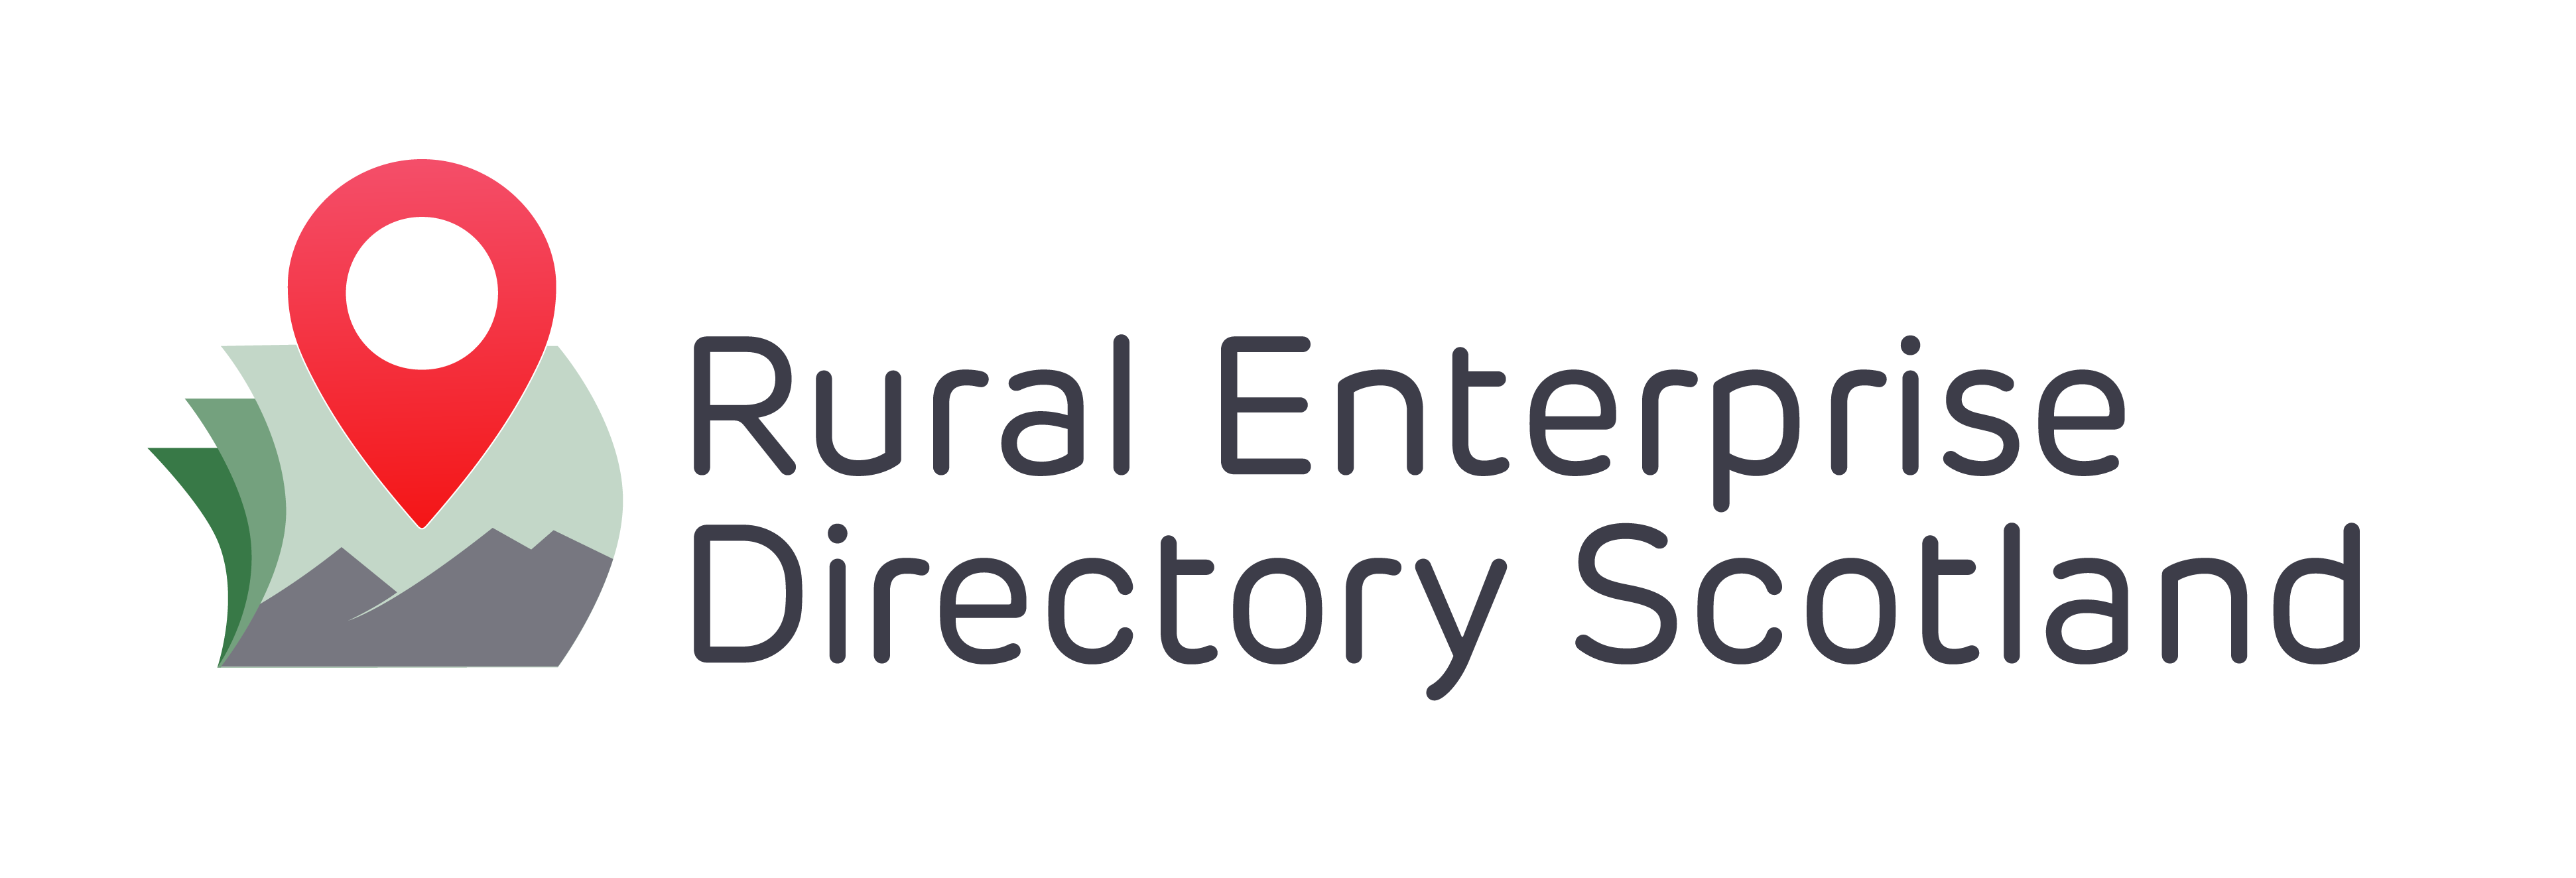 Rural Enterprise Directory Scotland logo